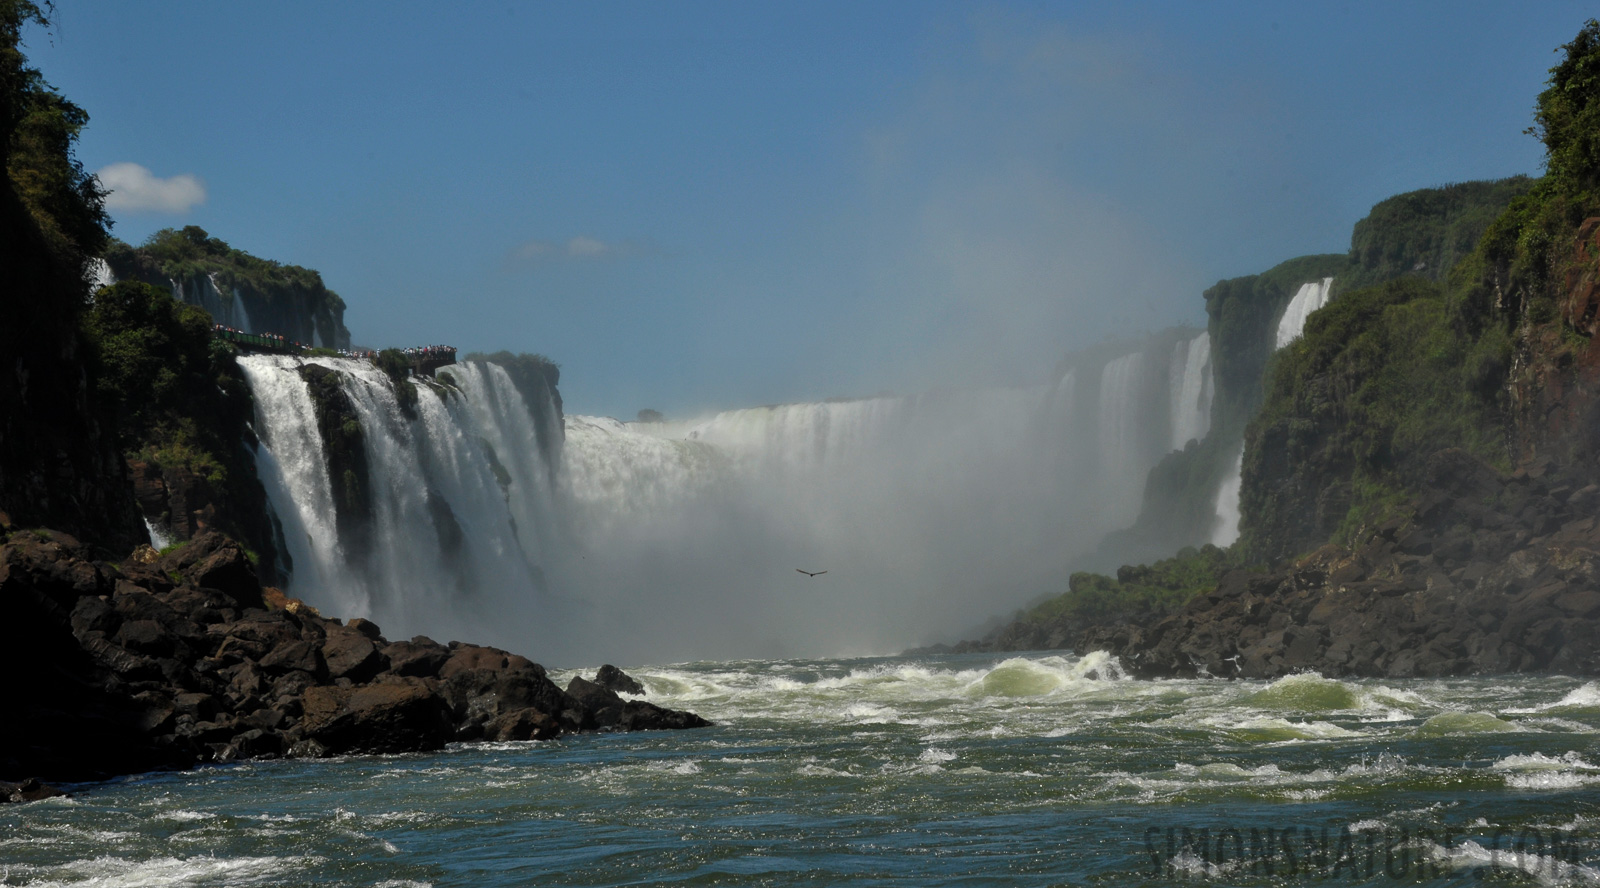 Cataratas del Iguazu [90 mm, 1/1000 sec at f / 13, ISO 800]